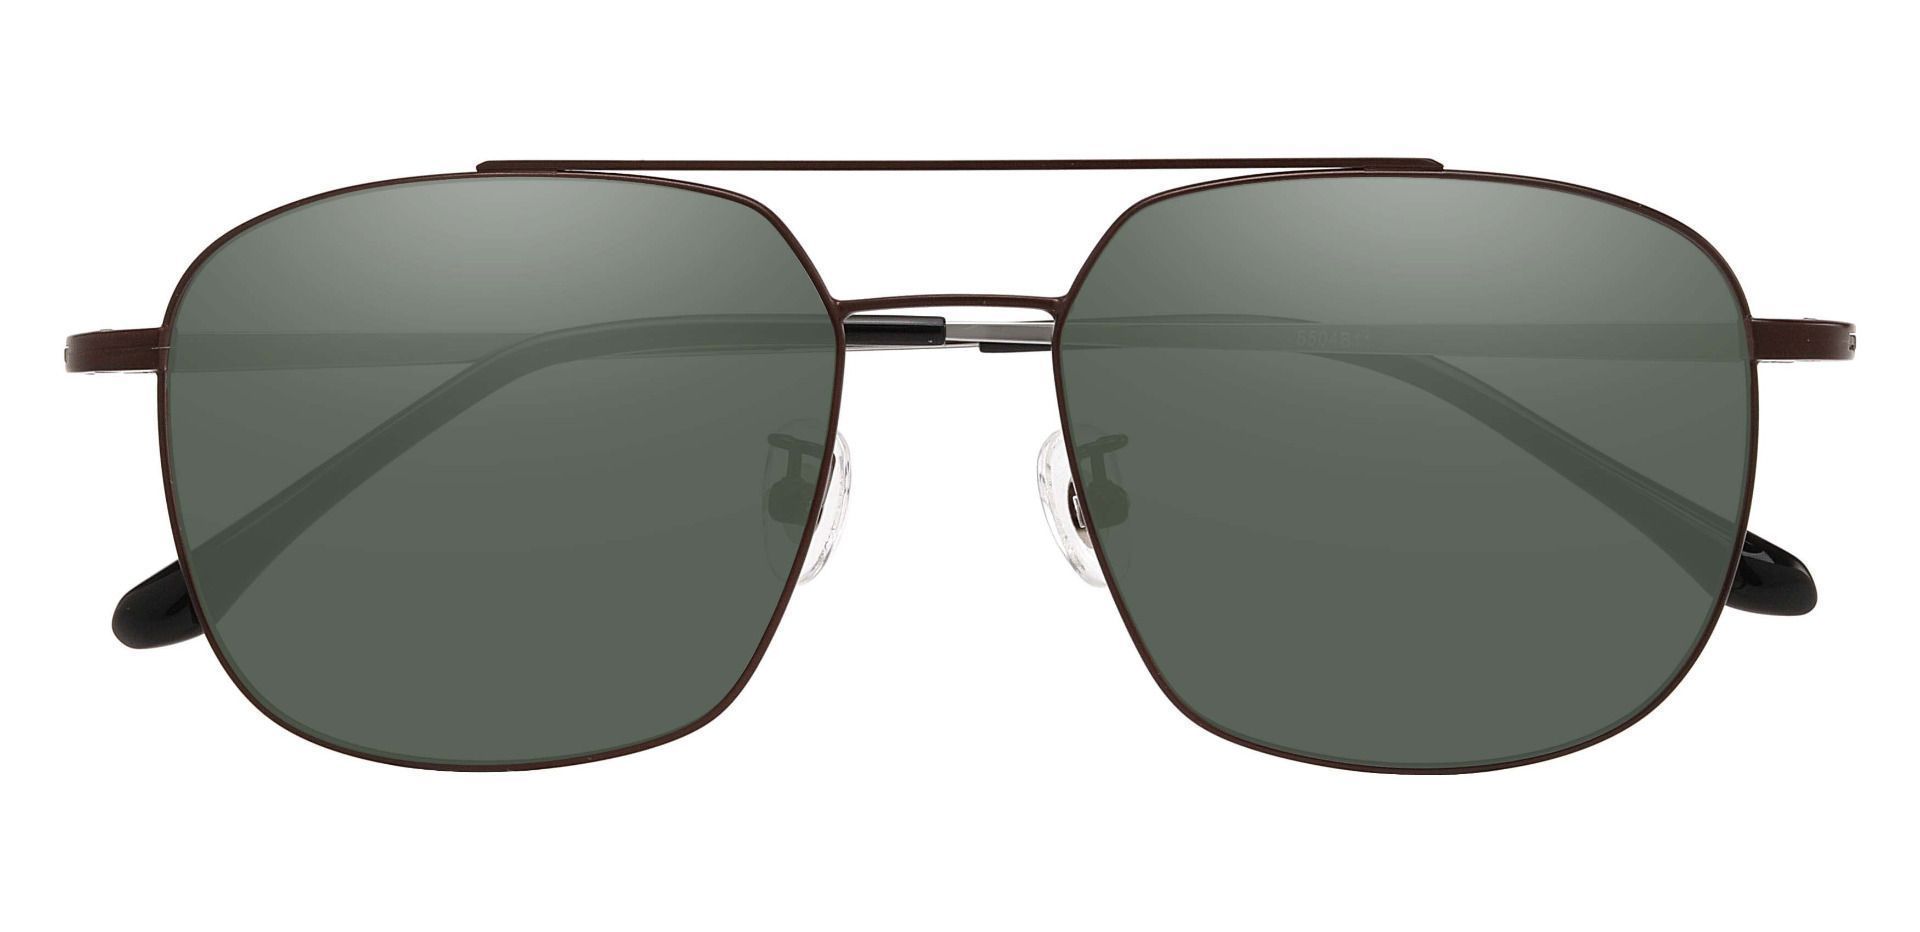 Trevor Aviator Prescription Sunglasses - Brown Frame With Green Lenses